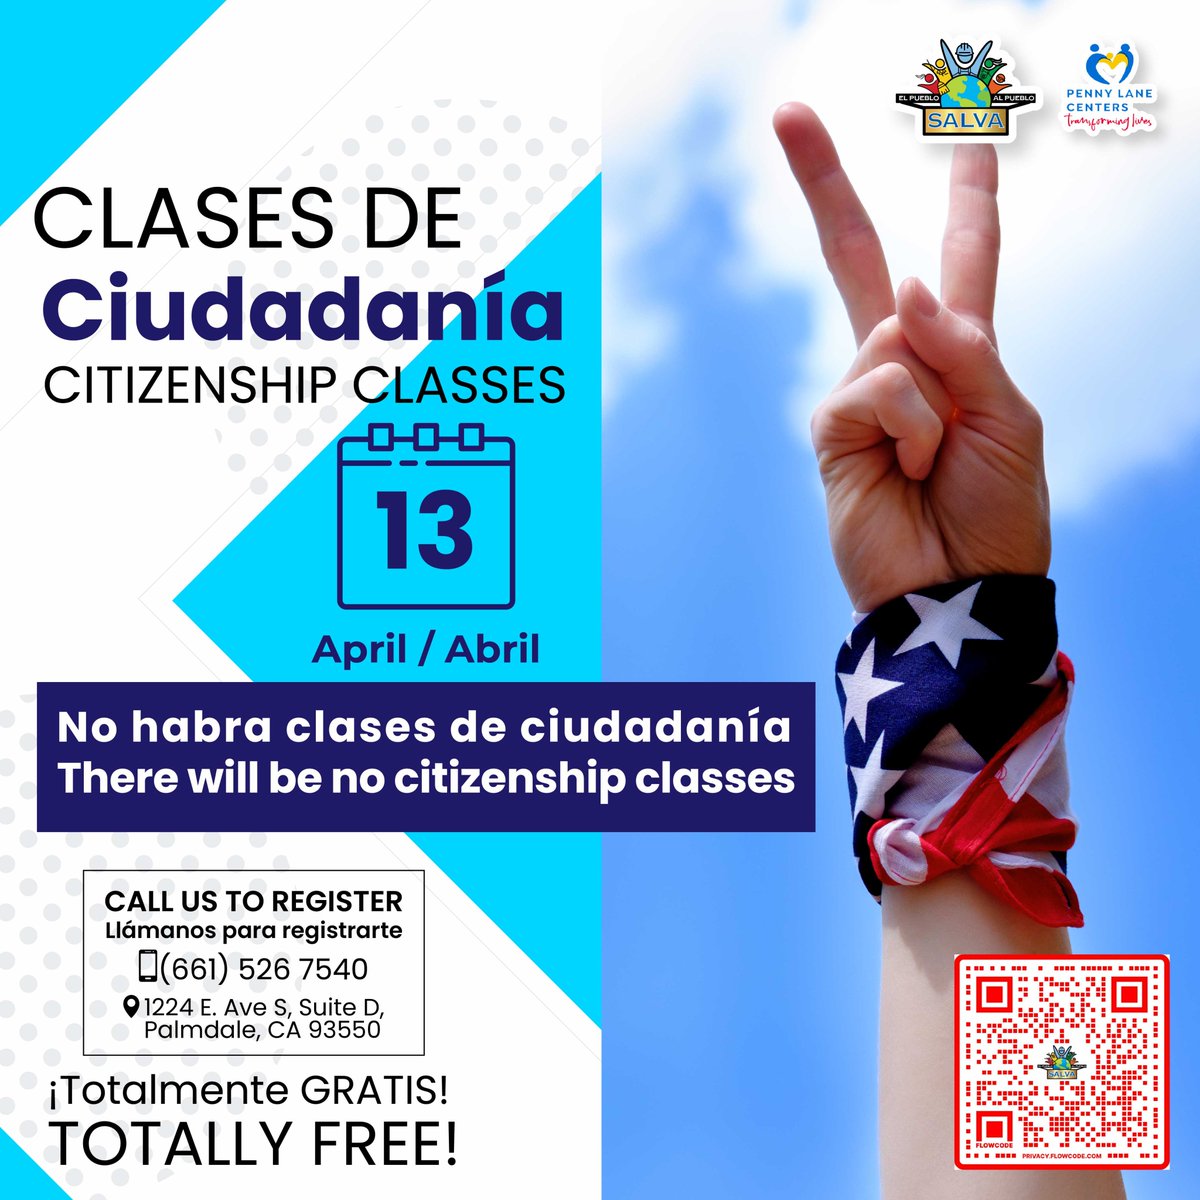 ❌Este sábado 13 de Abril NO HABRA clases de Ciudadania / ❌This Saturday, April 13th, there will be NO Citizenship classes.❌ 💻 salvaorganization.org 📞(661) 526-7540 de Lunes a Viernes